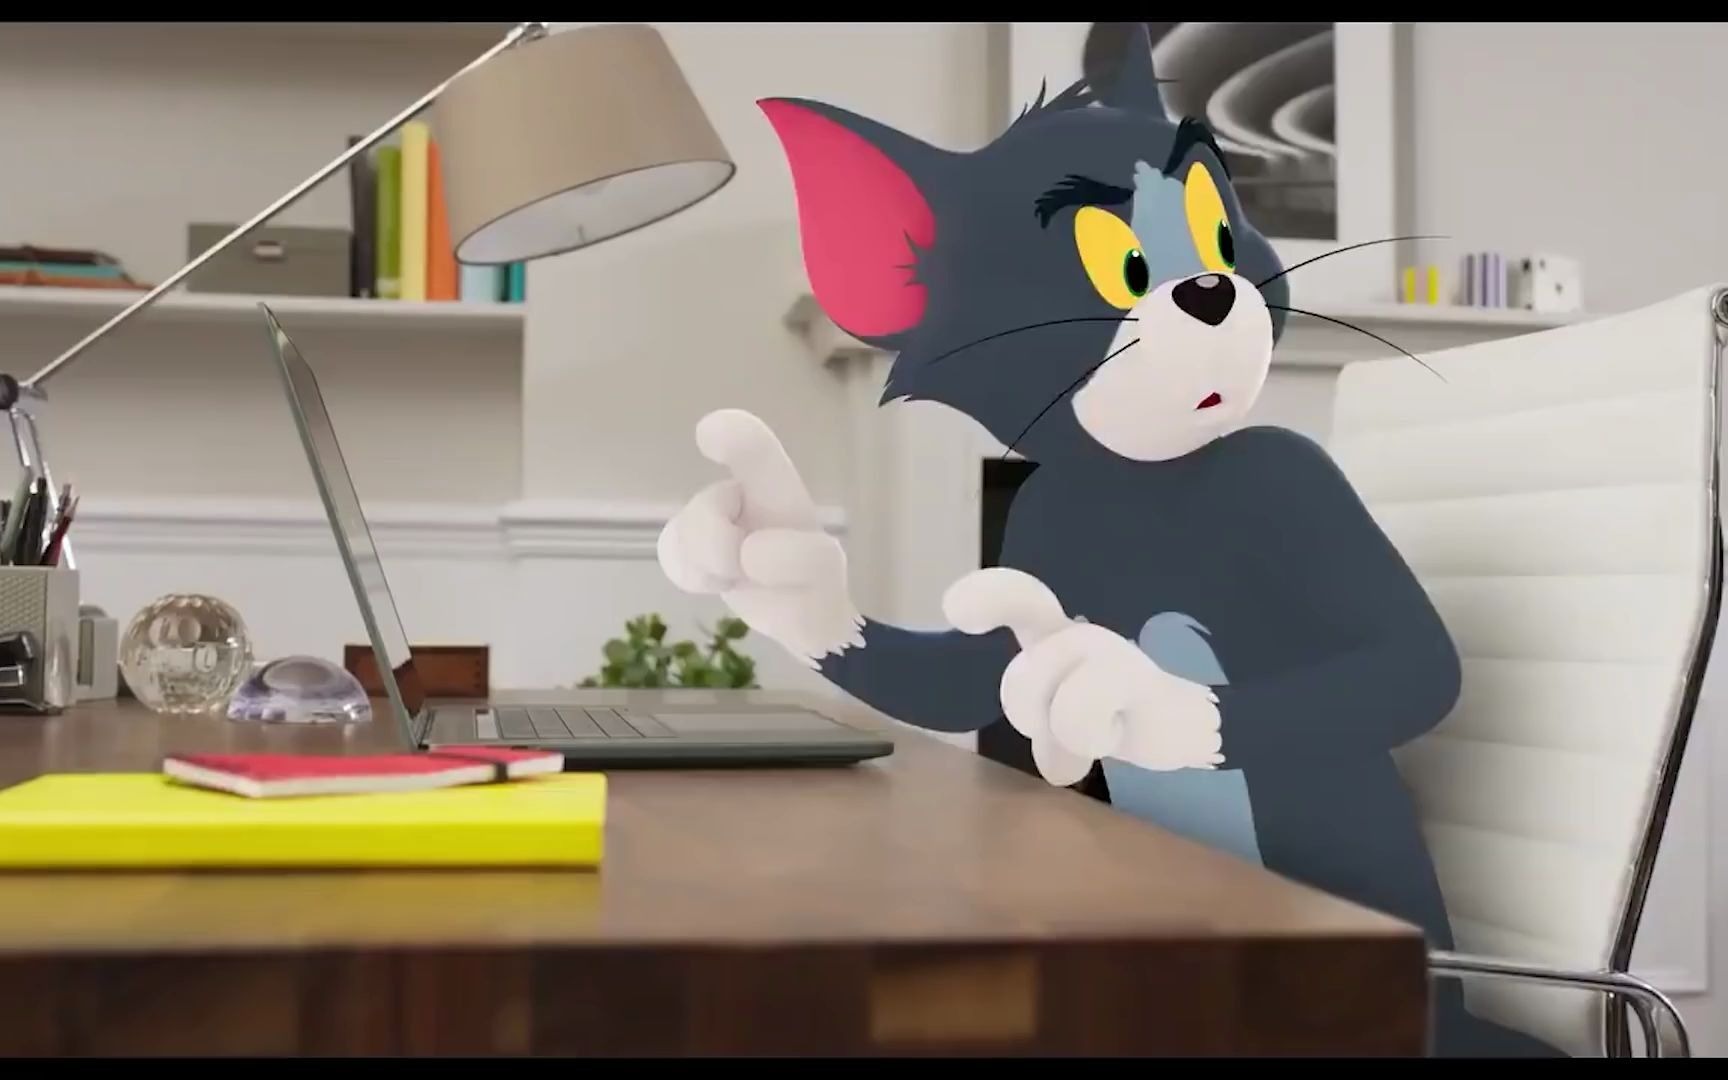 【猫和老鼠拟人】有些事…真的不怪汤姆……-yui金鱼-yui金鱼-哔哩哔哩视频